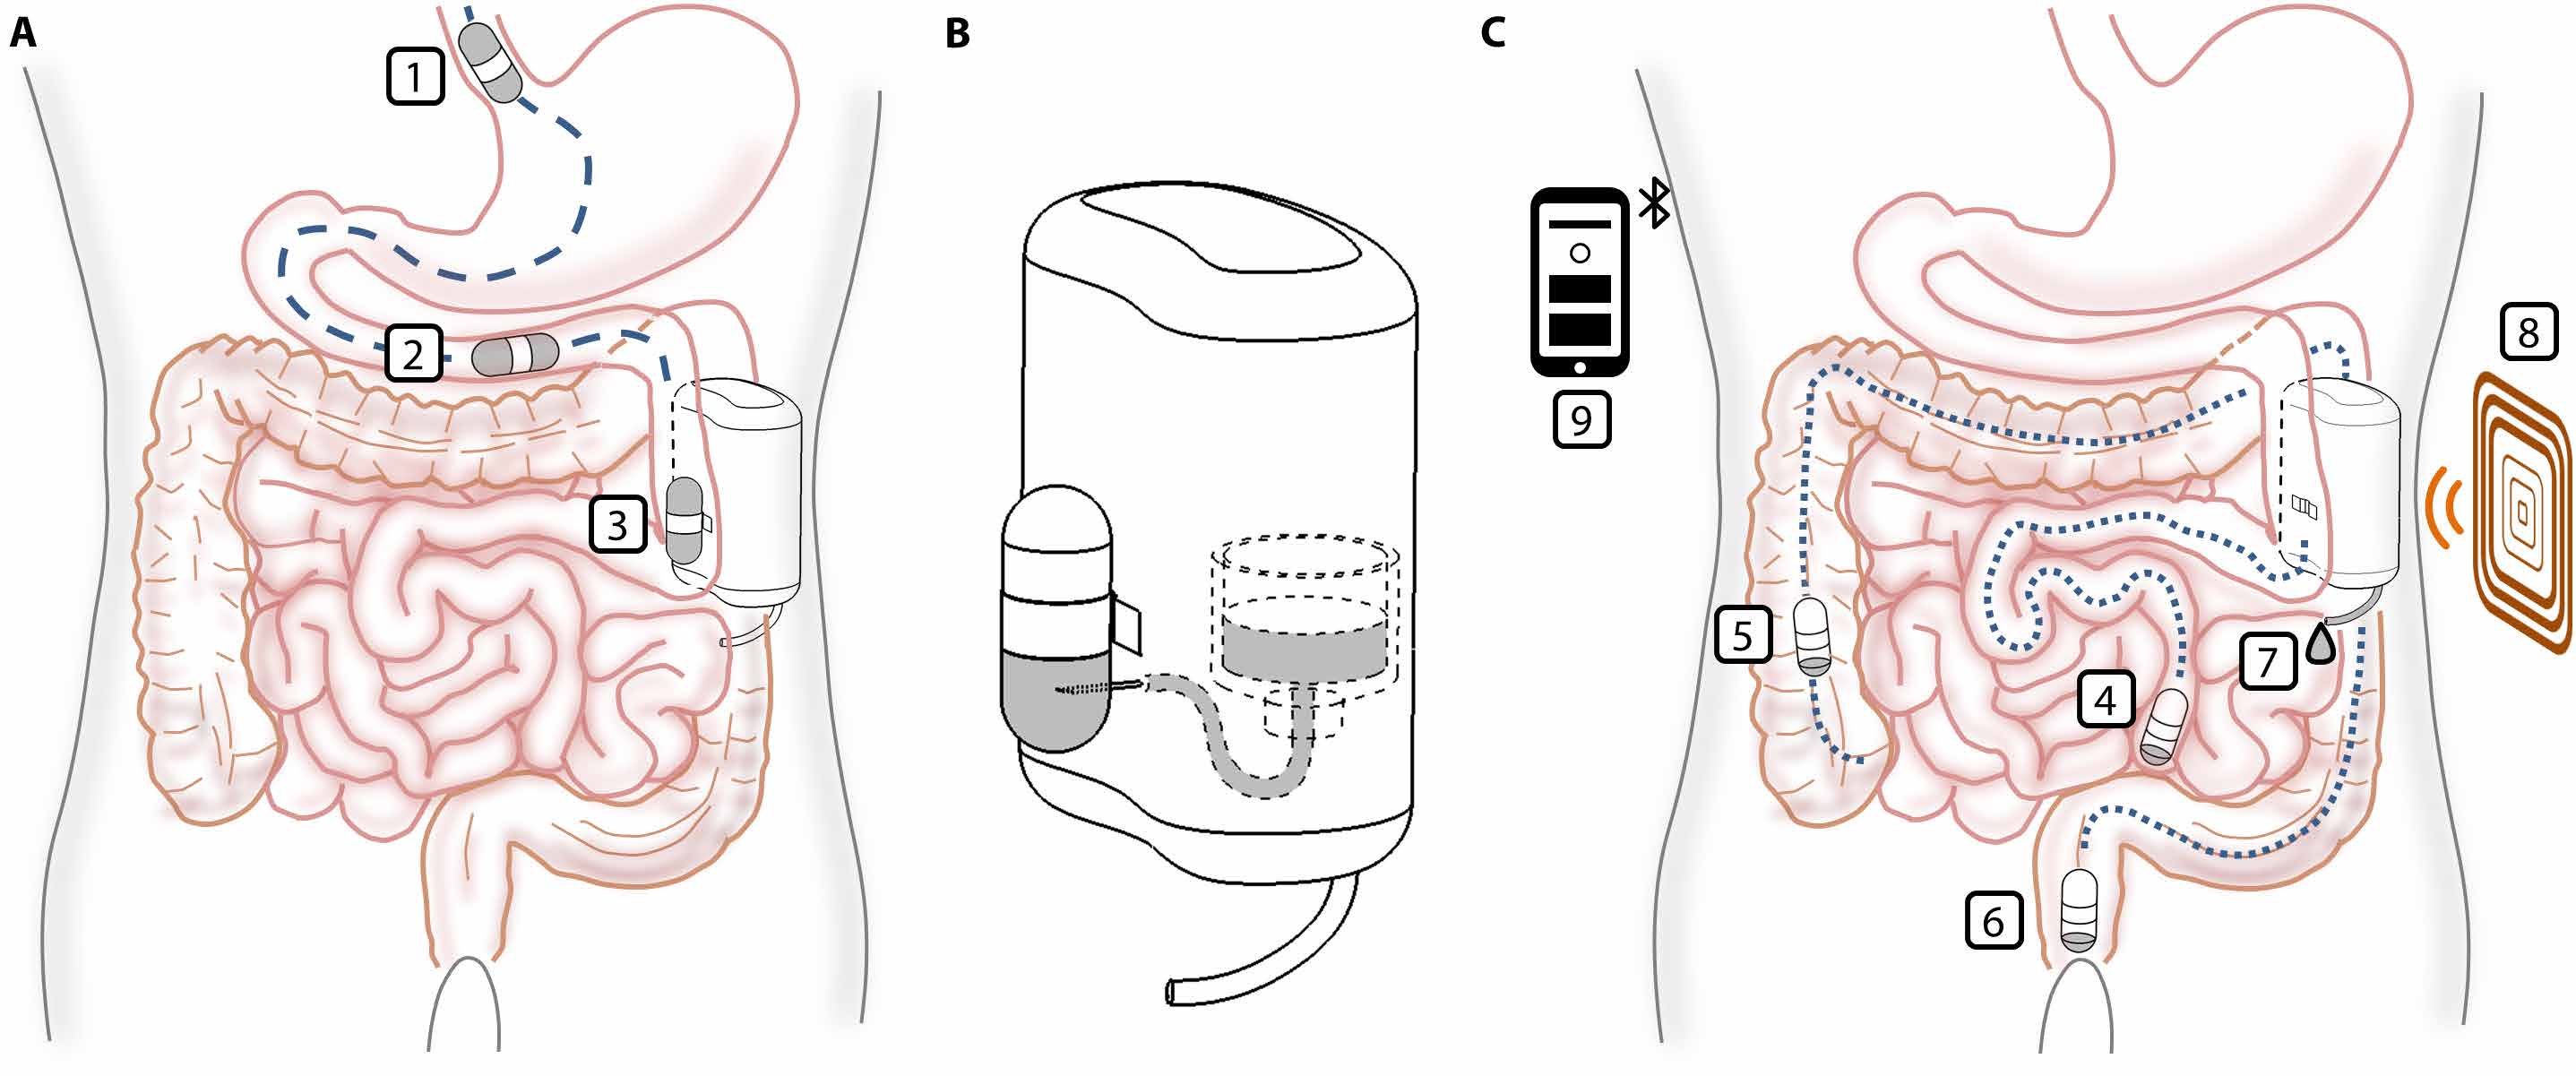 Схематичне зображення процесу сполучення магнітної капсули з імплантатом для його наповнення (зліва), а також зарядження пристрою та вивення капсули з організму (справа).&amp;nbsp;Veronica Iacovacci et al. / Science Robotics, 2021